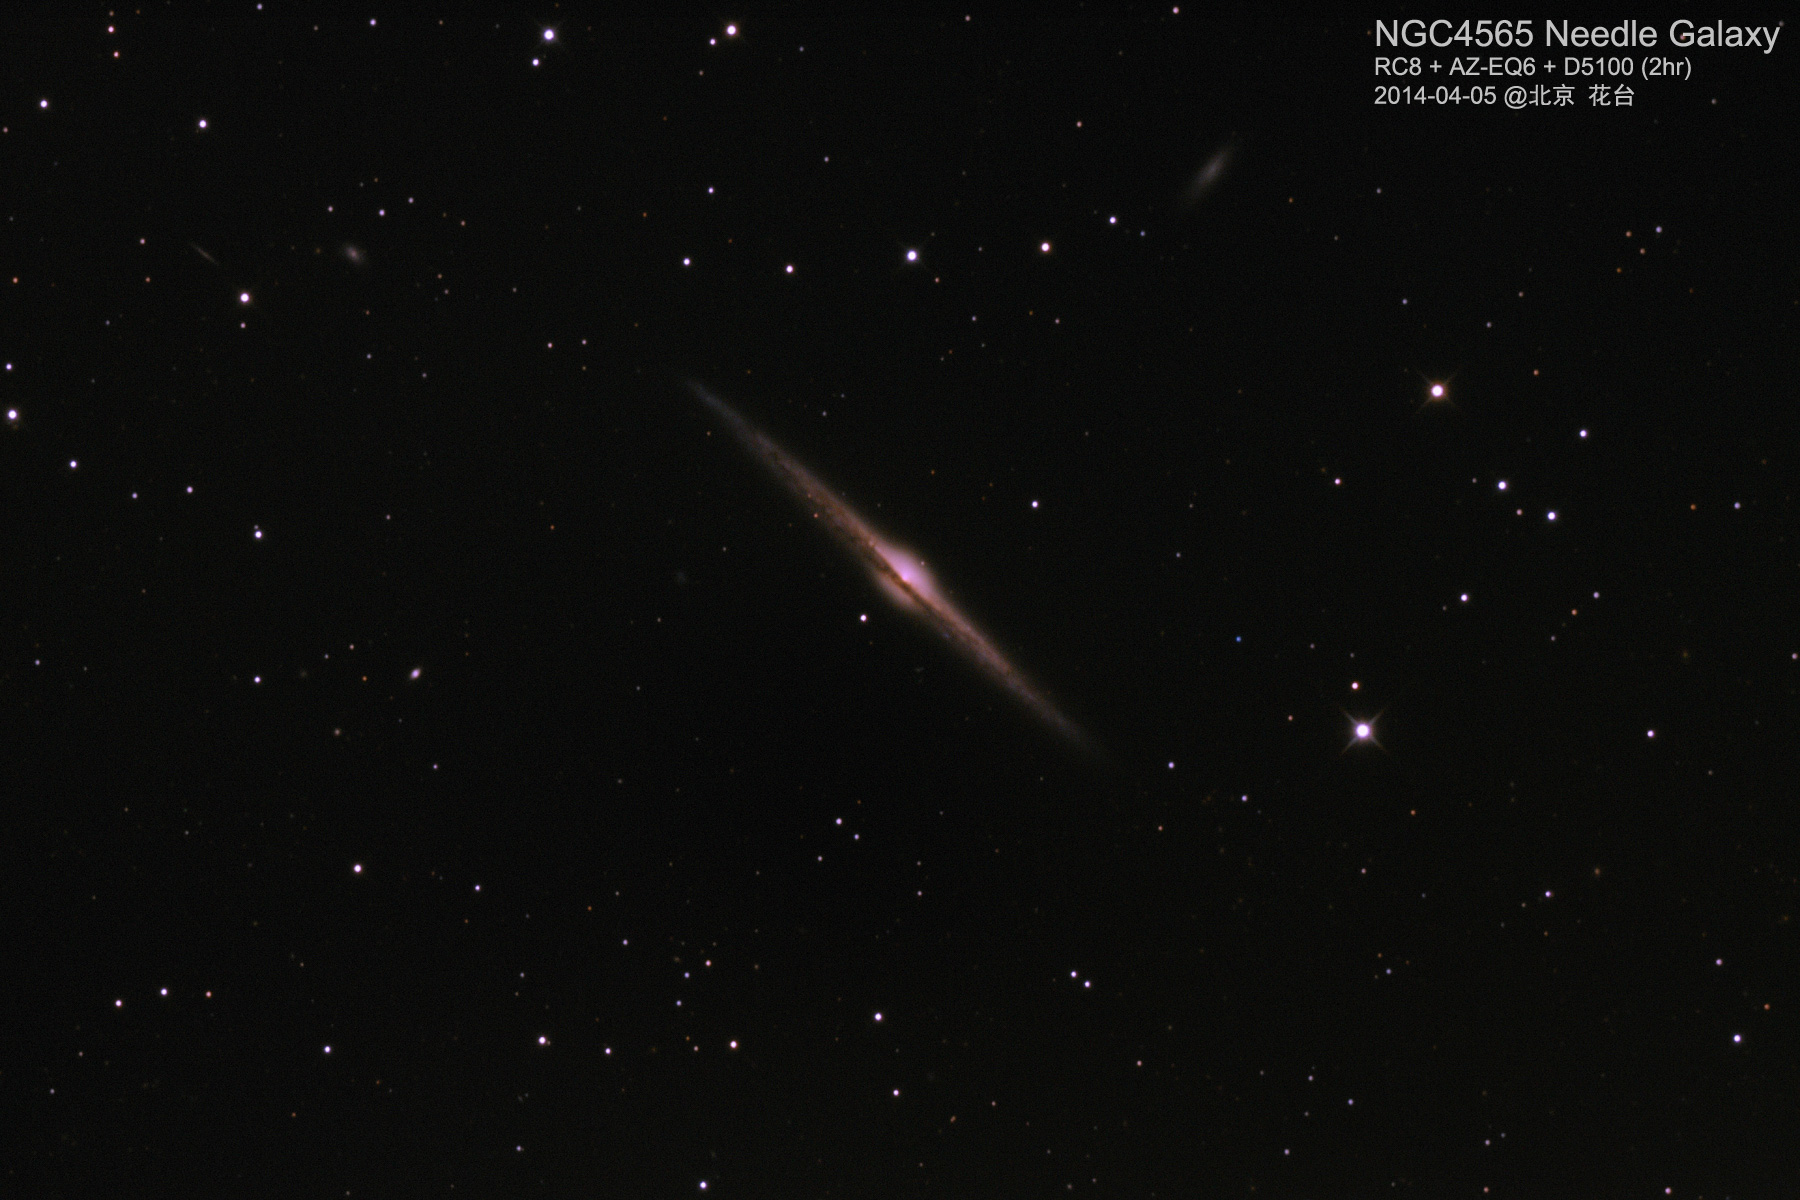 NGC4565-2hr-RC8-D5100-1800.jpg